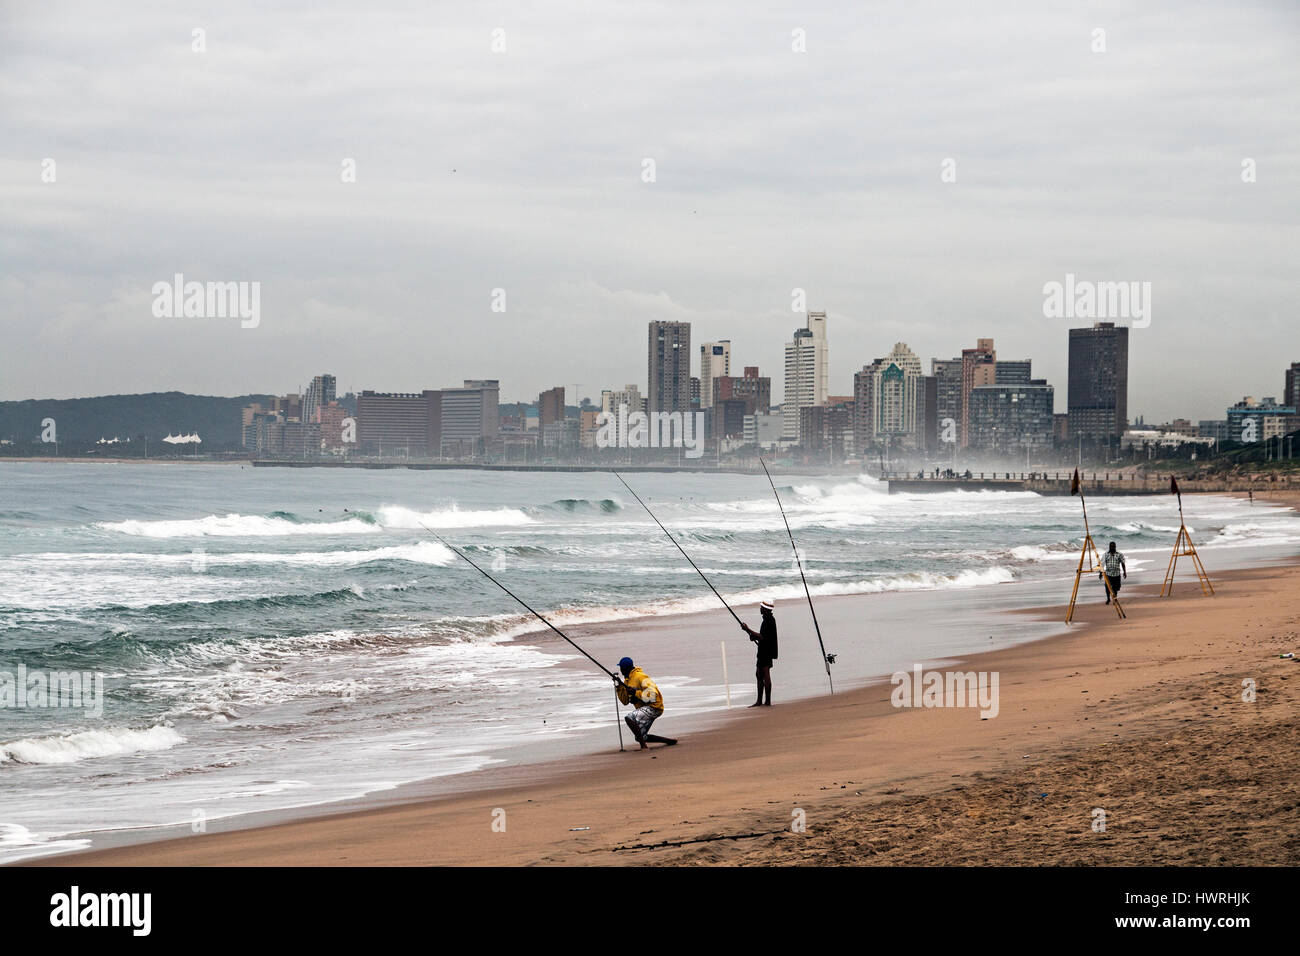 DURBAN, Südafrika - 23. März 2017: drei unbekannte am frühen Morgen Fischer am Strand gegen bewölkten Skyline von Durban in Südafrika Stockfoto